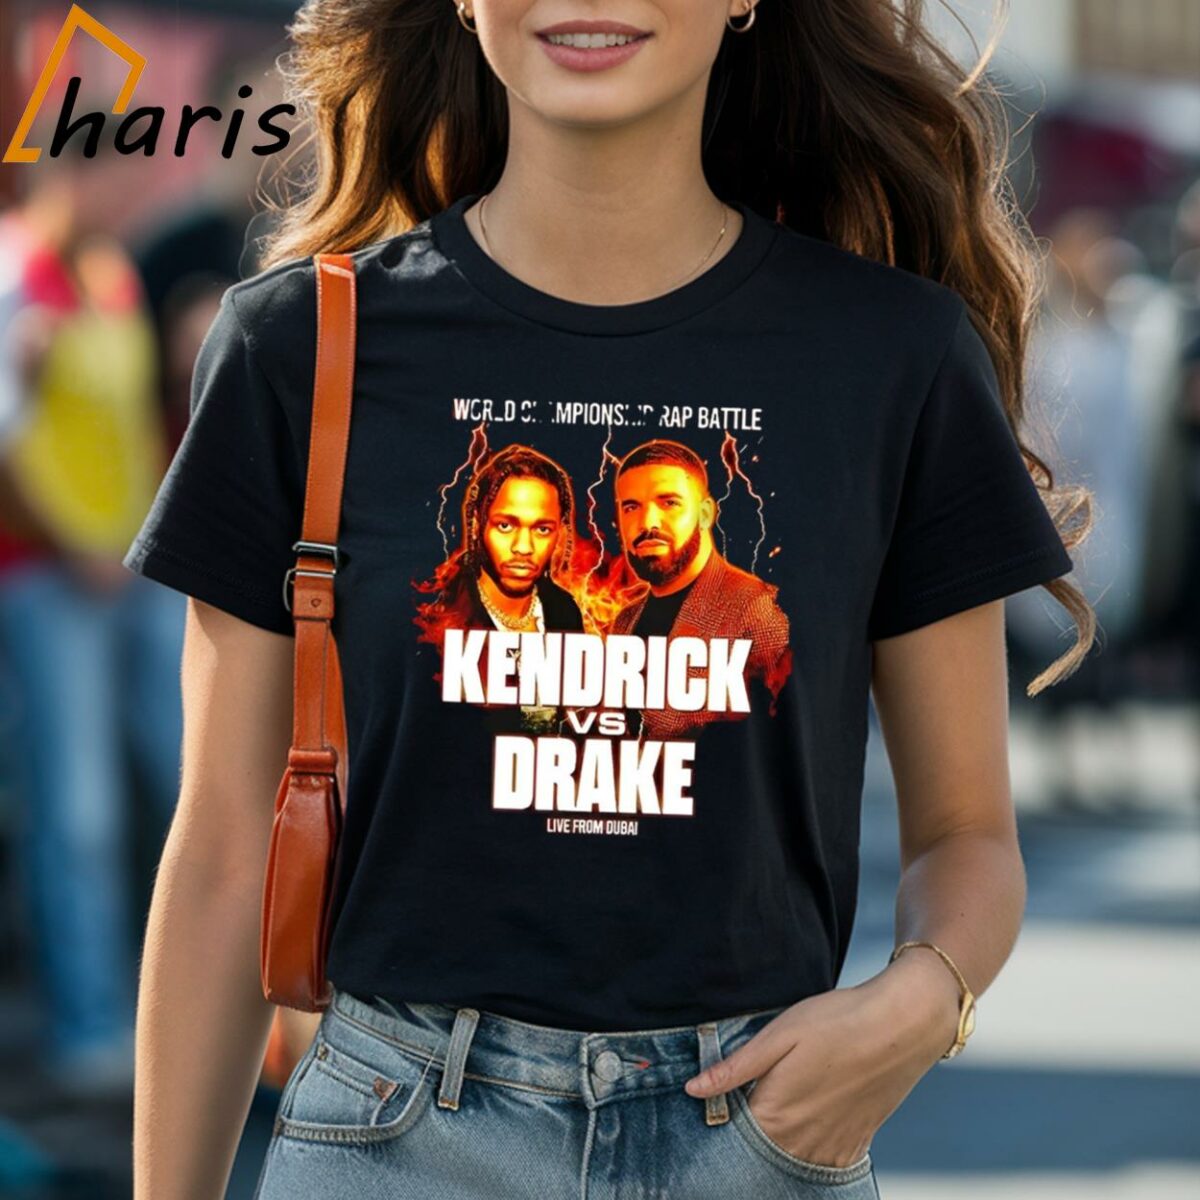 Kendrick Lamar Vs Drake World Championship Rap Battle Live From Dubai Shirt 1 Shirt